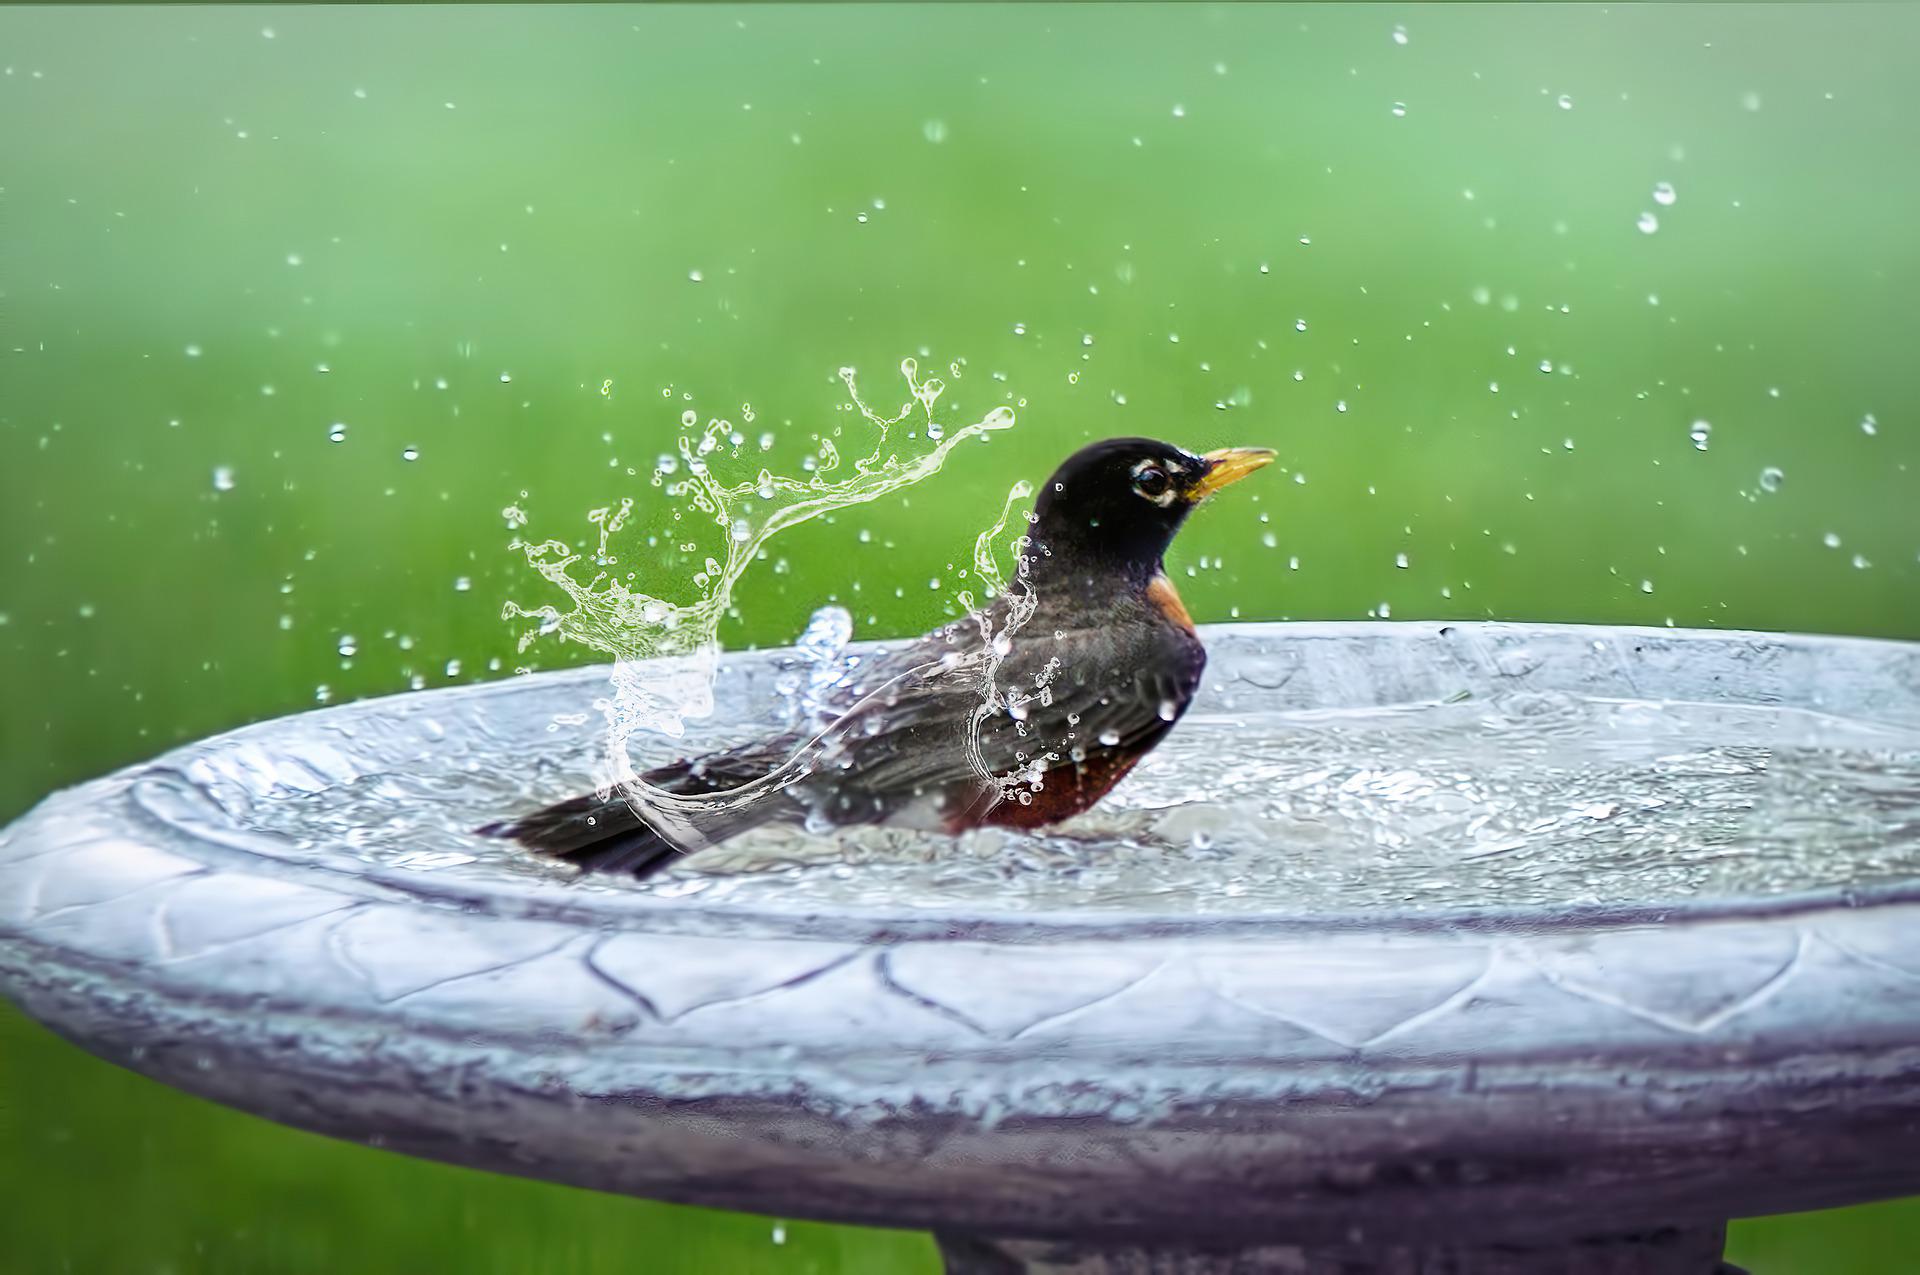 Vögel und Insekten im Sommer (Quelle: pixabay.com)